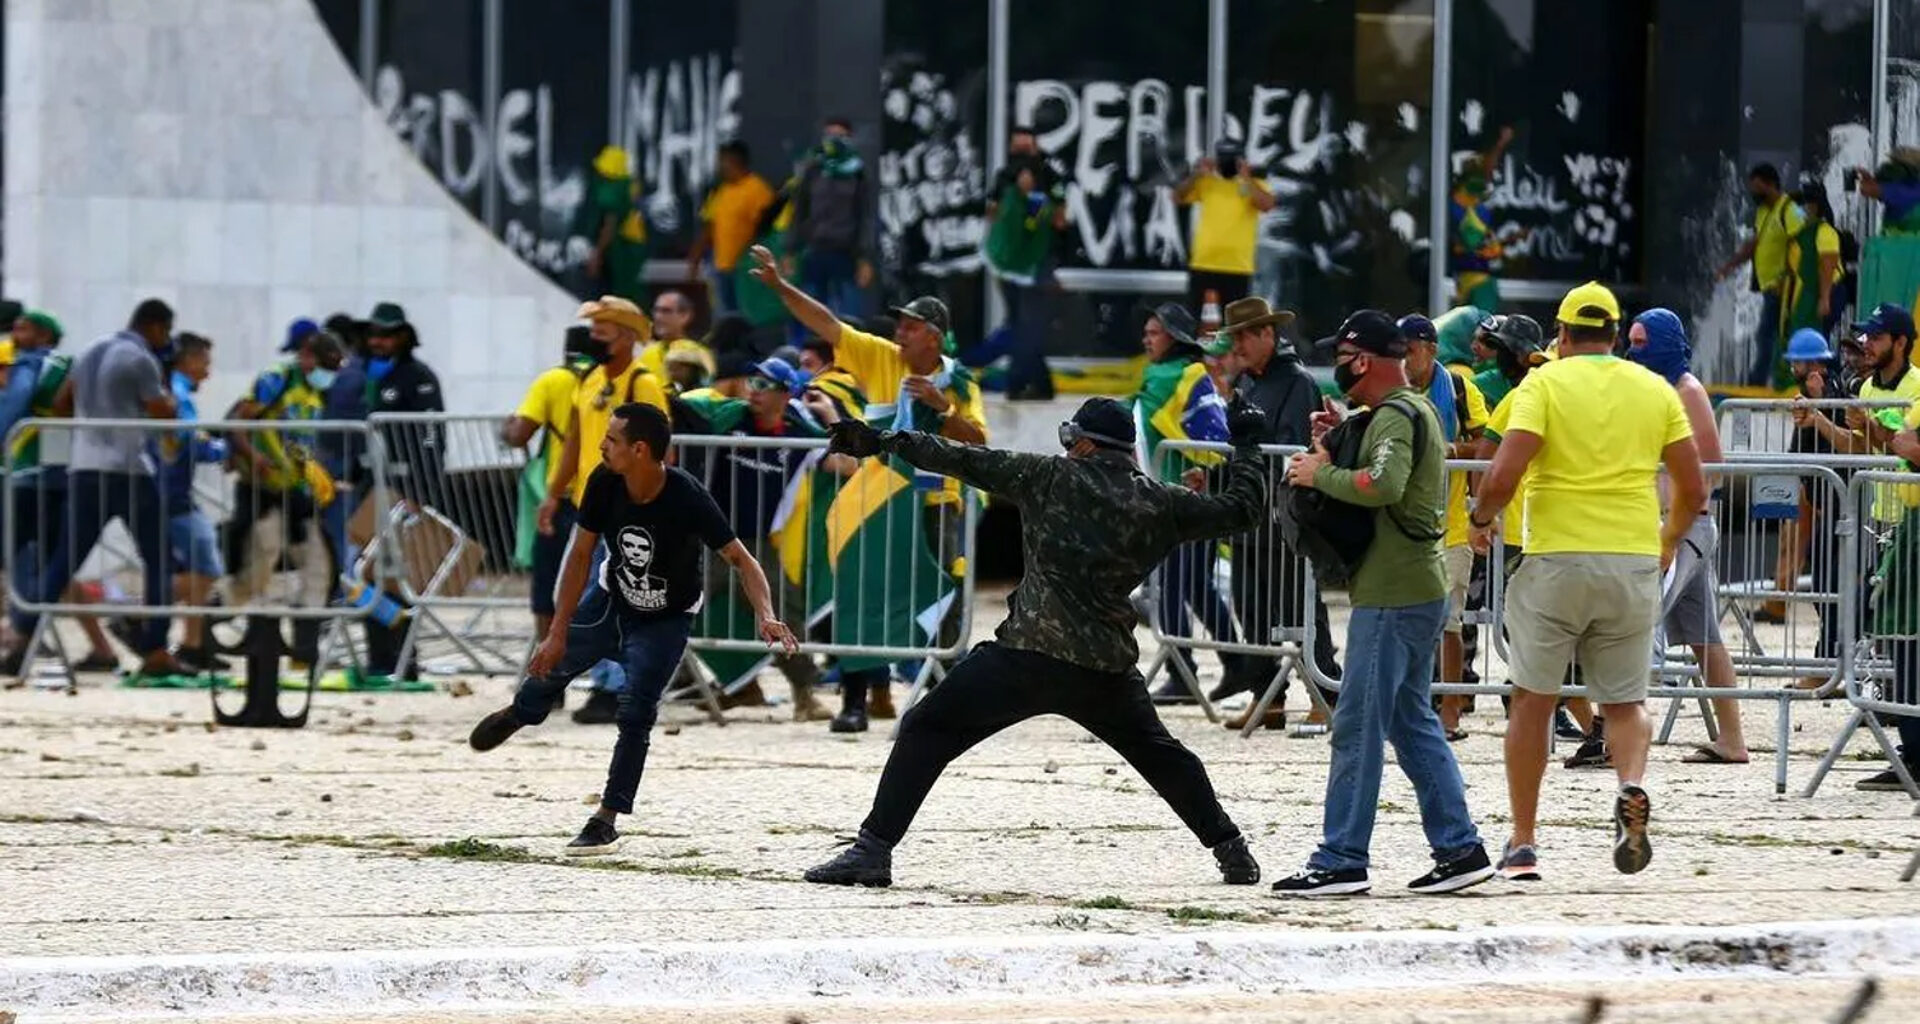 Atrapalhar eleições no brasil t alt destaq vidro quebrado em primeiro plano, com logo pessoas espalhadas em toda a imagem, destruindo estruturas do local